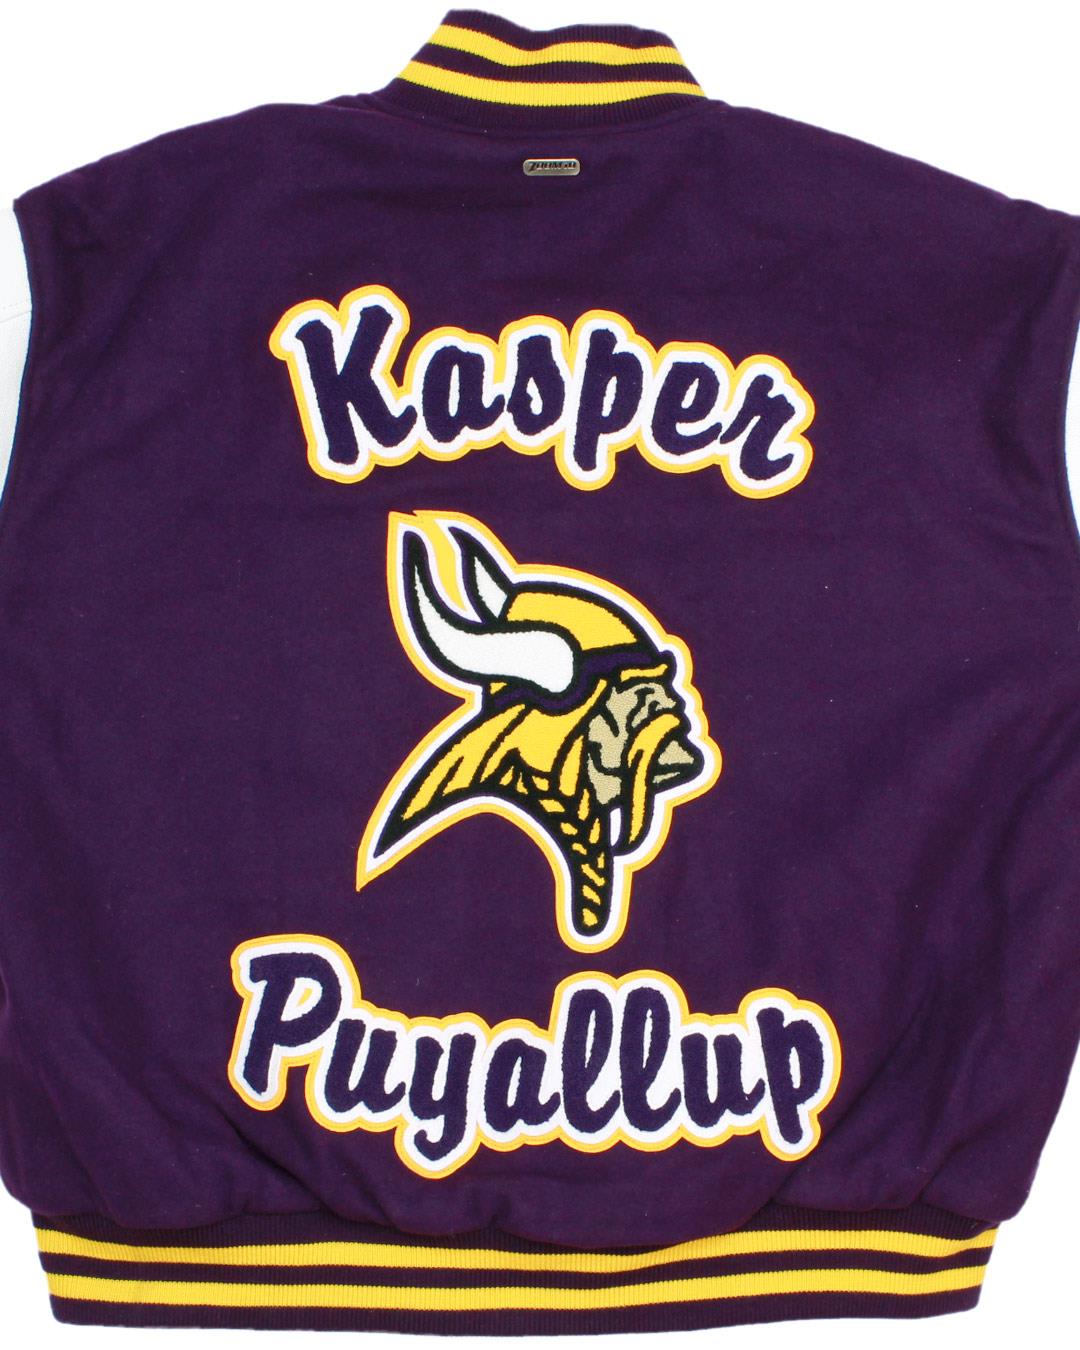 Puyallup High School Vikings Lettermen Jacket, Puyallup, WA - Back